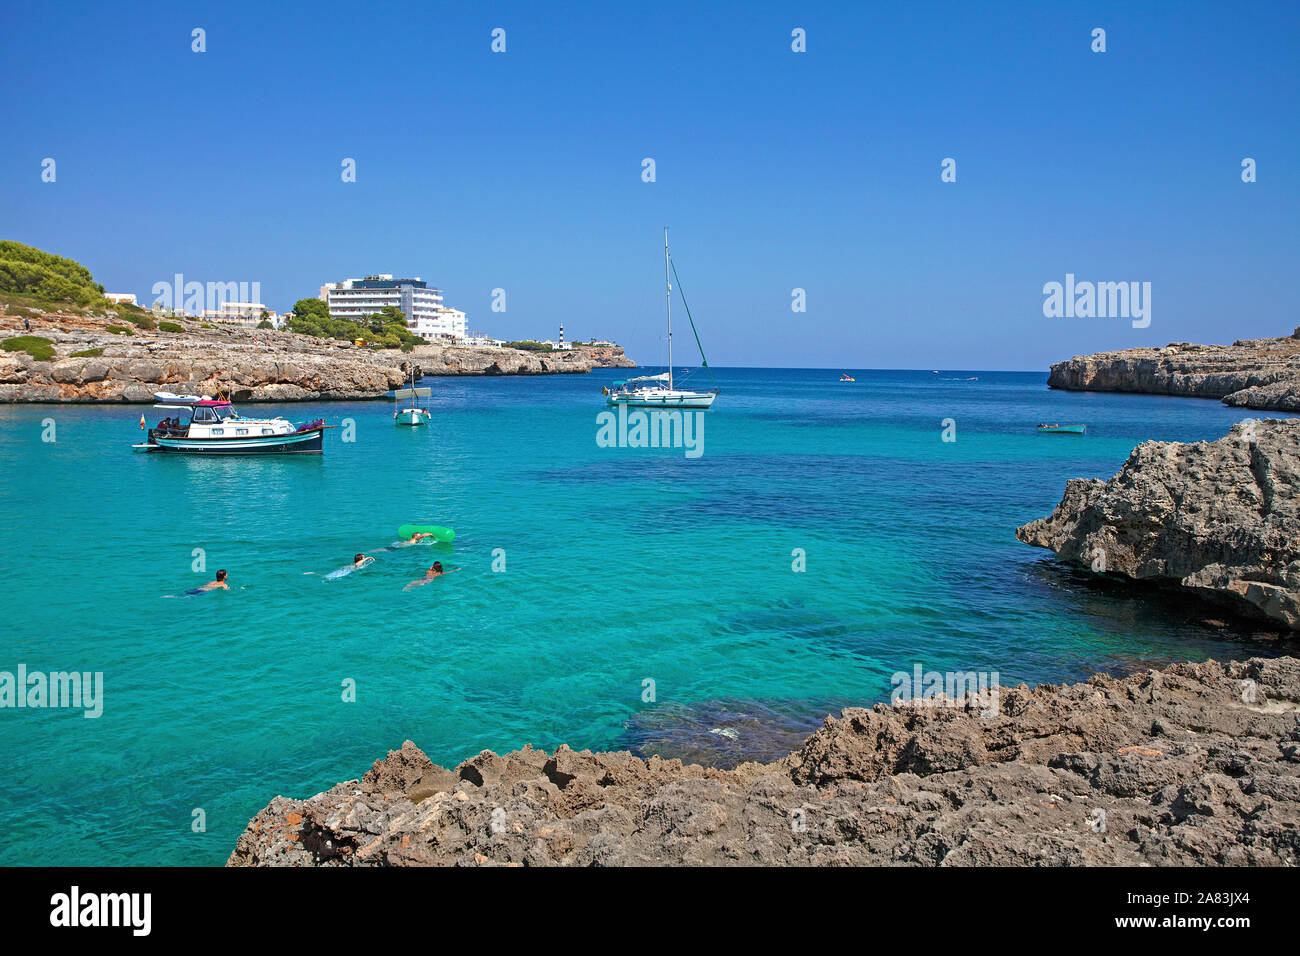 Persone nuotare nella baia di Cala Marcal, spiaggia balneare di Porto Colom, Maiorca, isole Baleari, Spagna Foto Stock